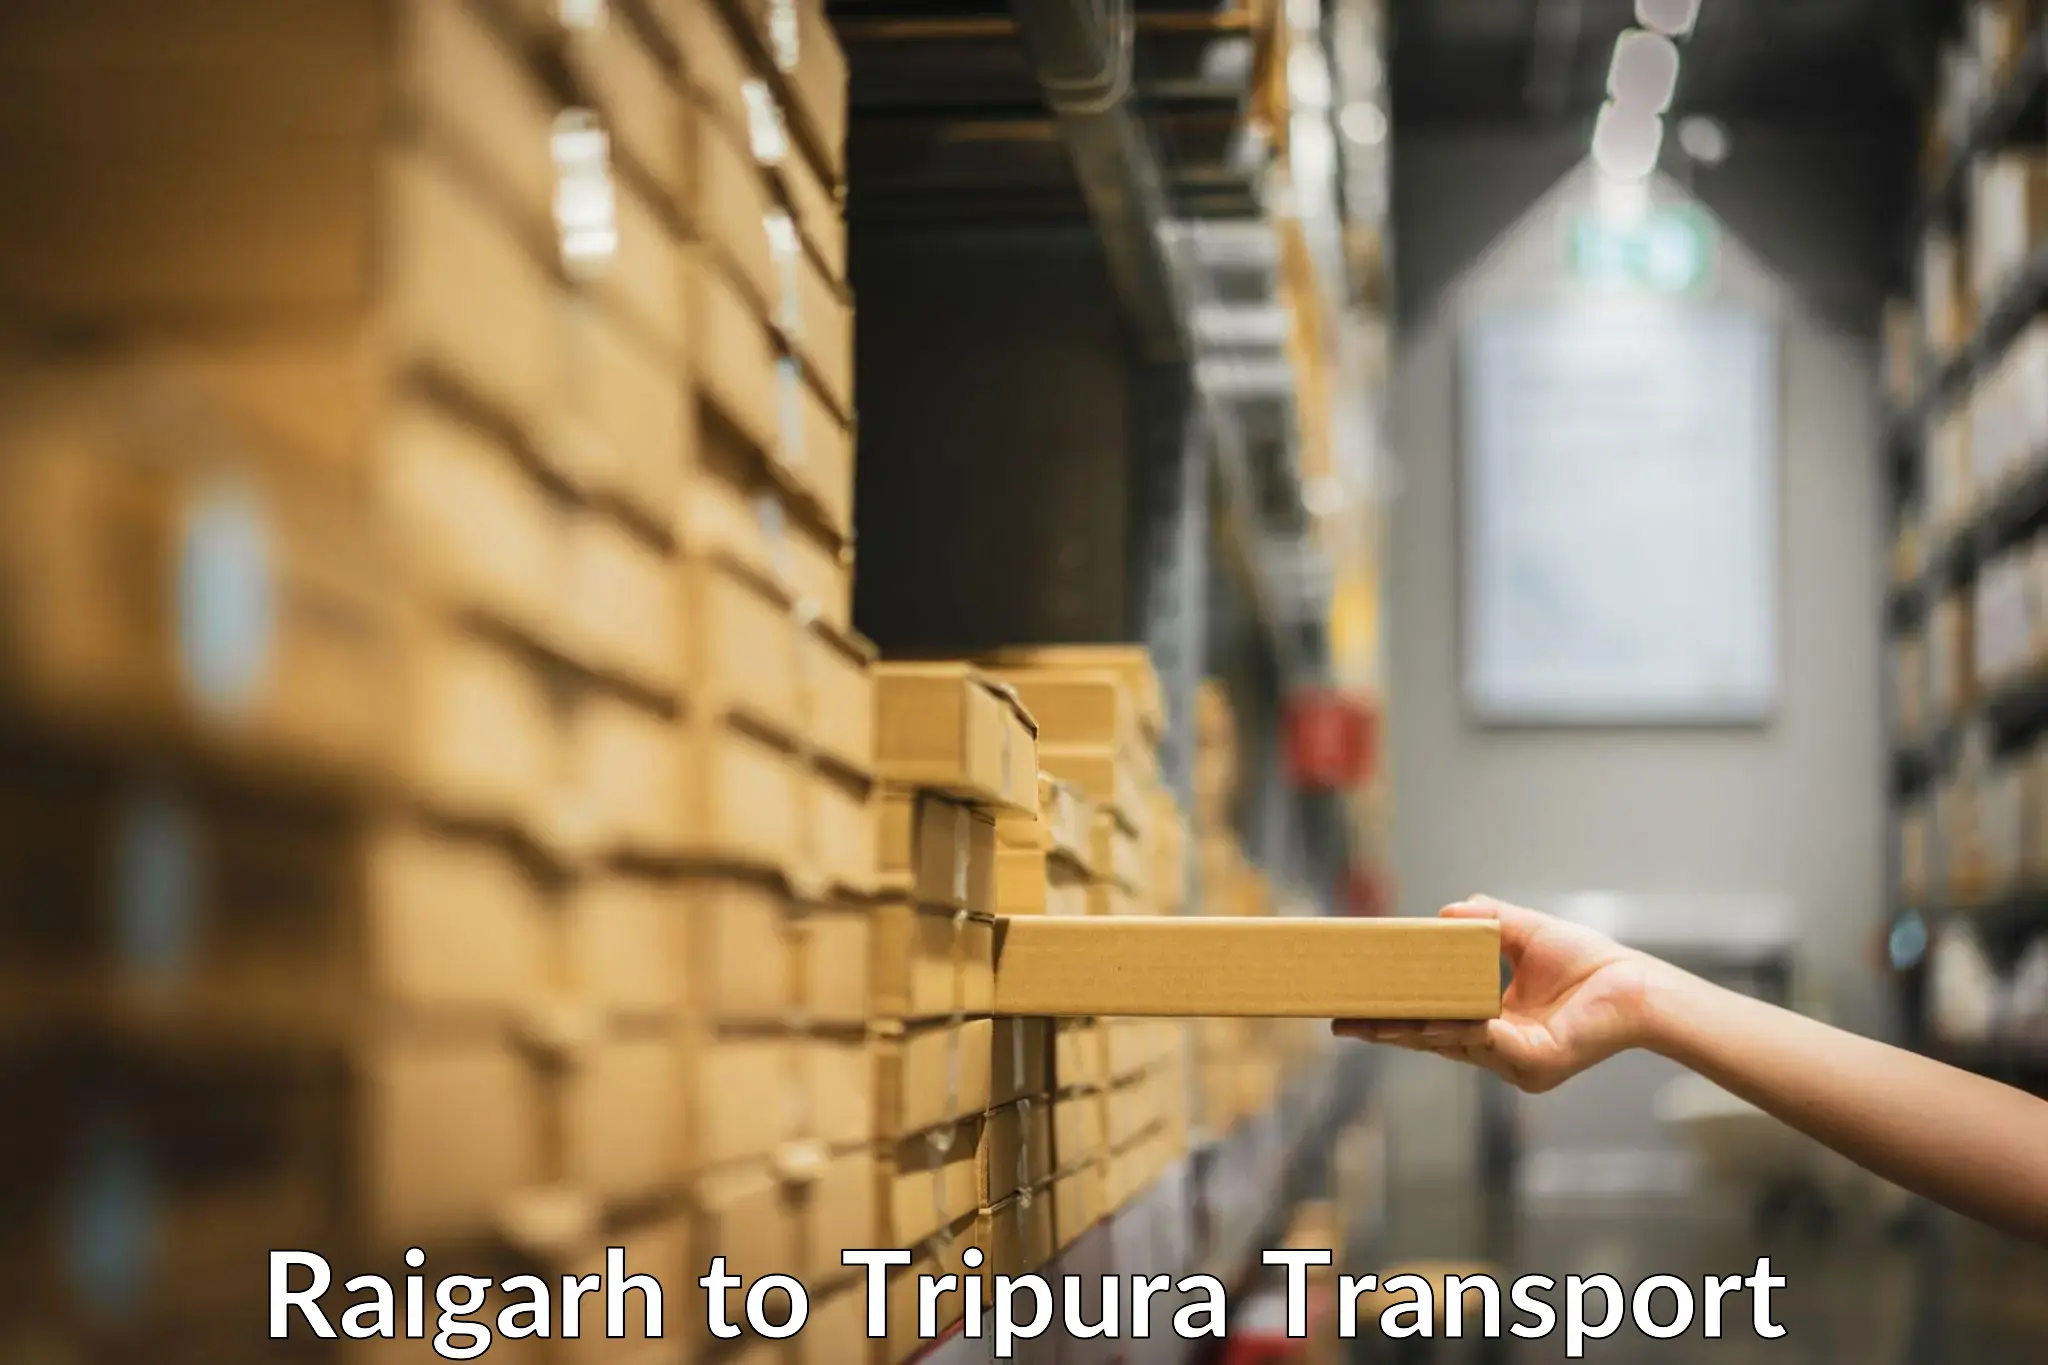 Nearby transport service Raigarh to Teliamura